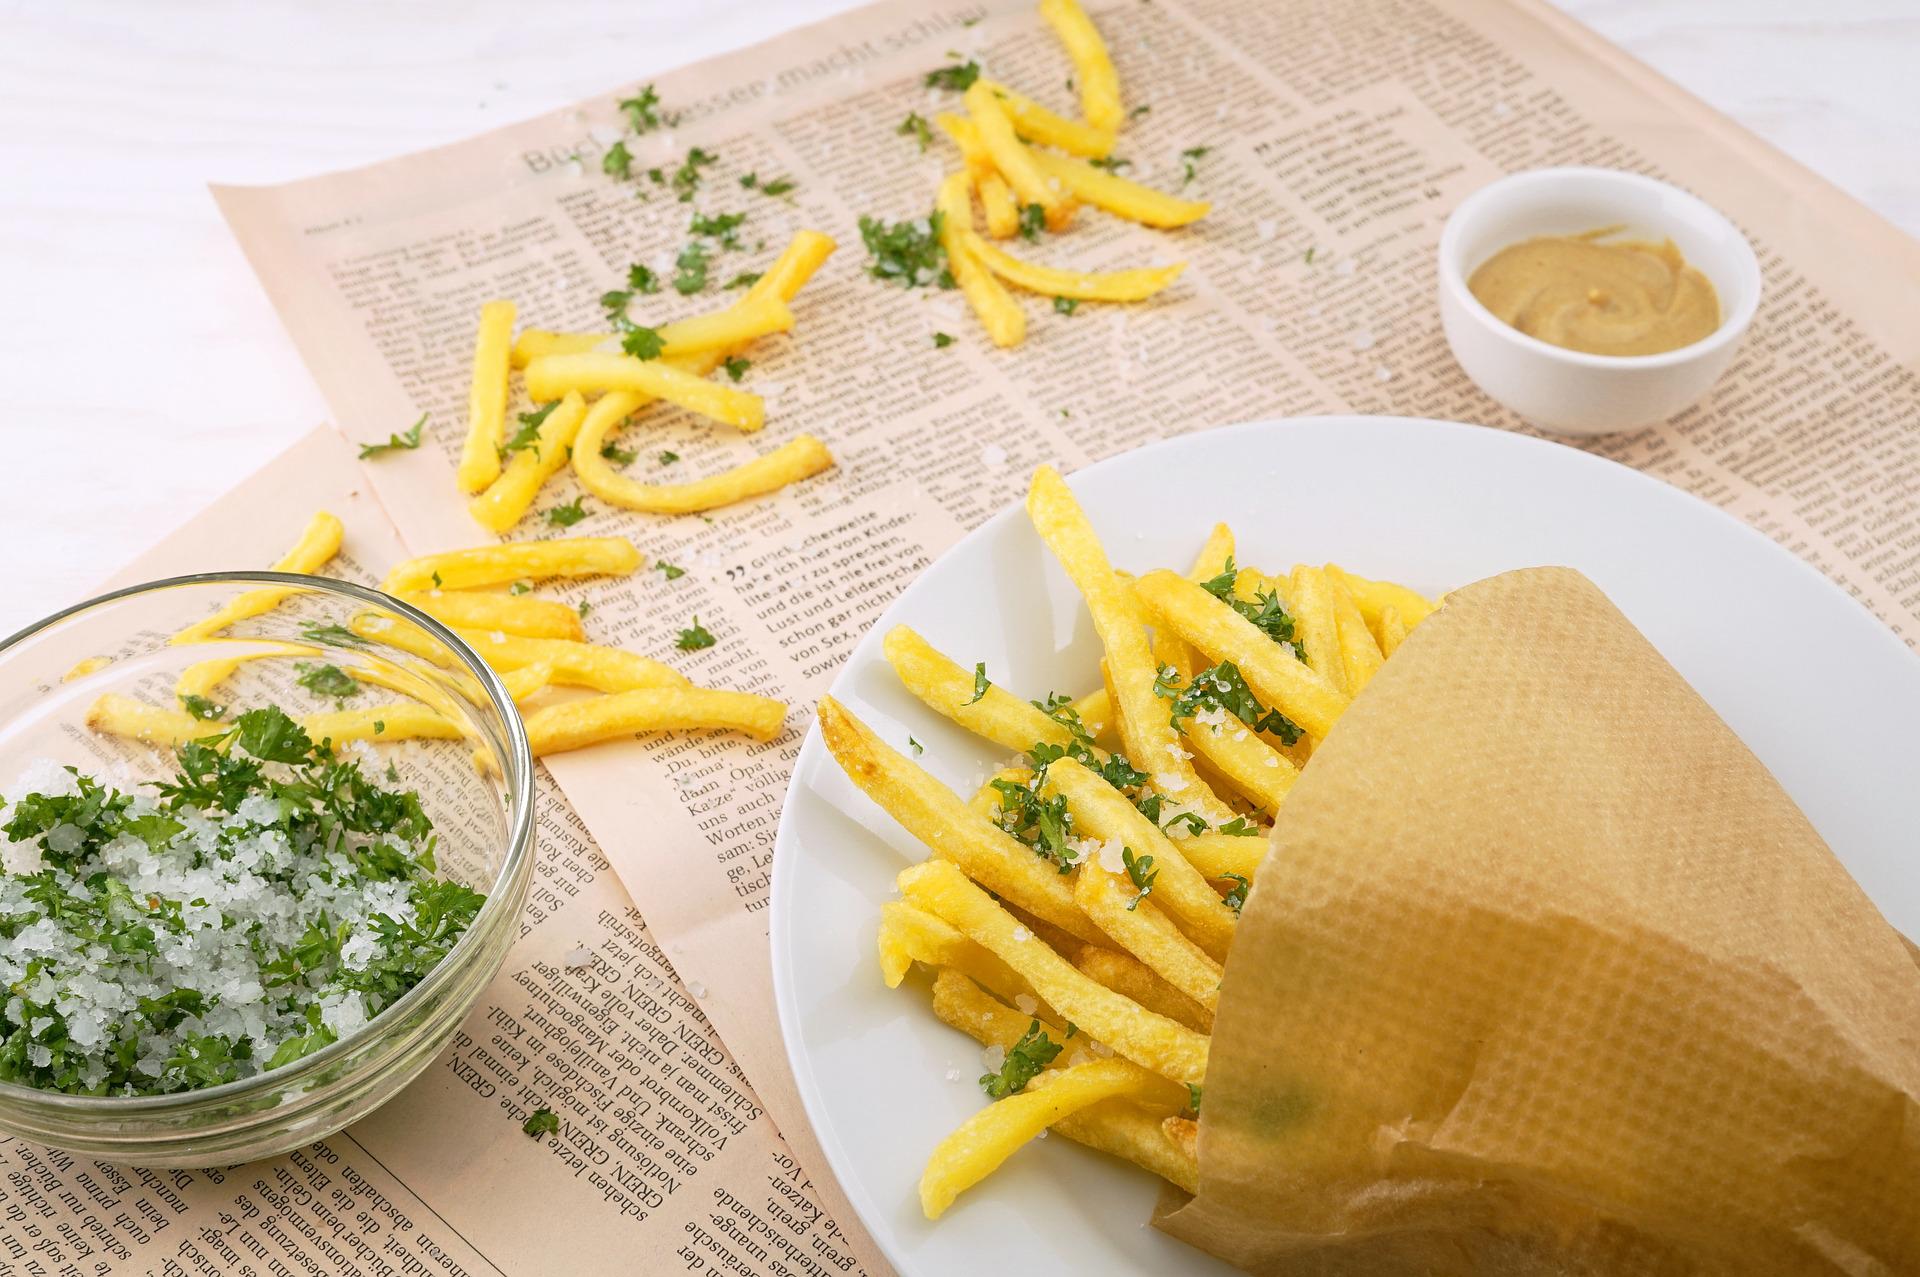 Crujiente y delicioso: cómo hacer patatas fritas 🍟 congeladas en